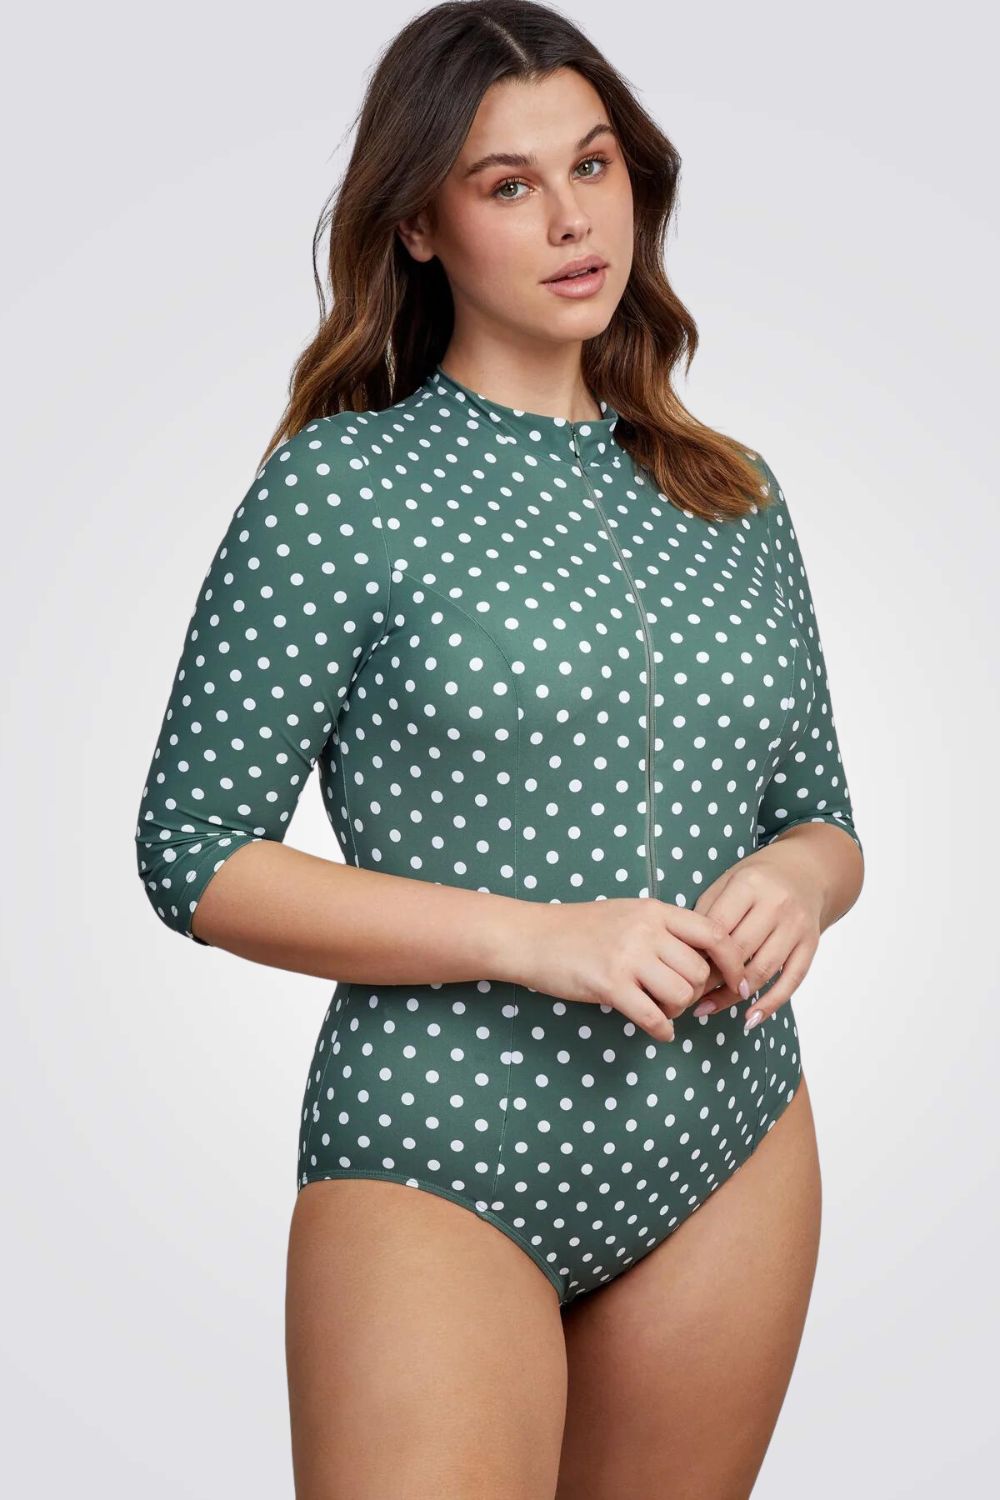 בגד ים שלם עם נקודות בצבע ירוק לנשים